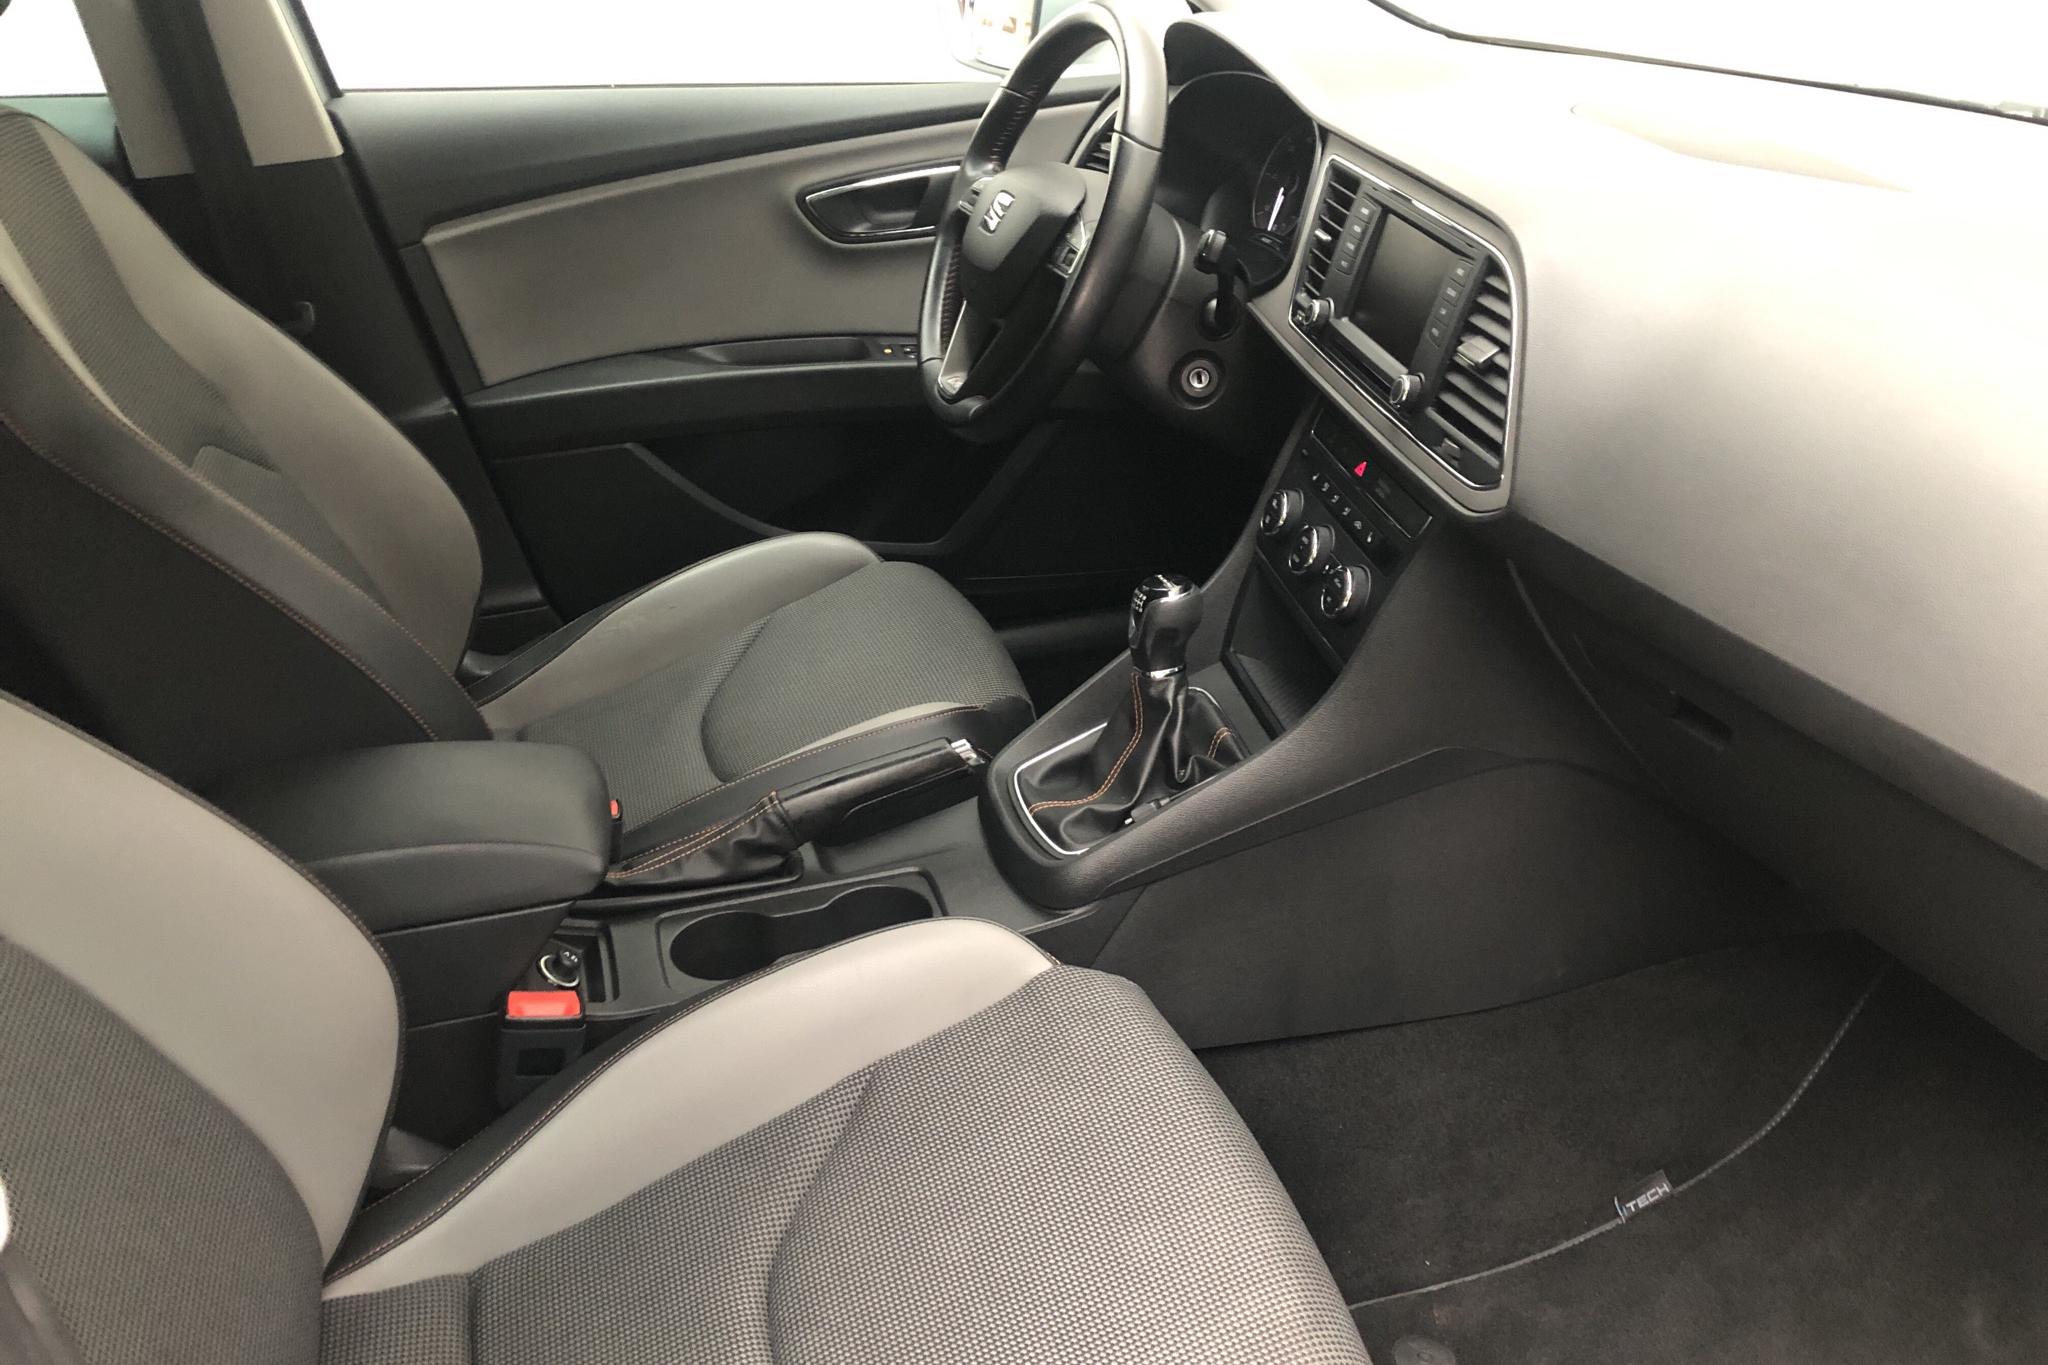 Seat Leon 1.6 TDI ST X-Perience 4Drive (110hk) - 130 930 km - Manual - silver - 2015